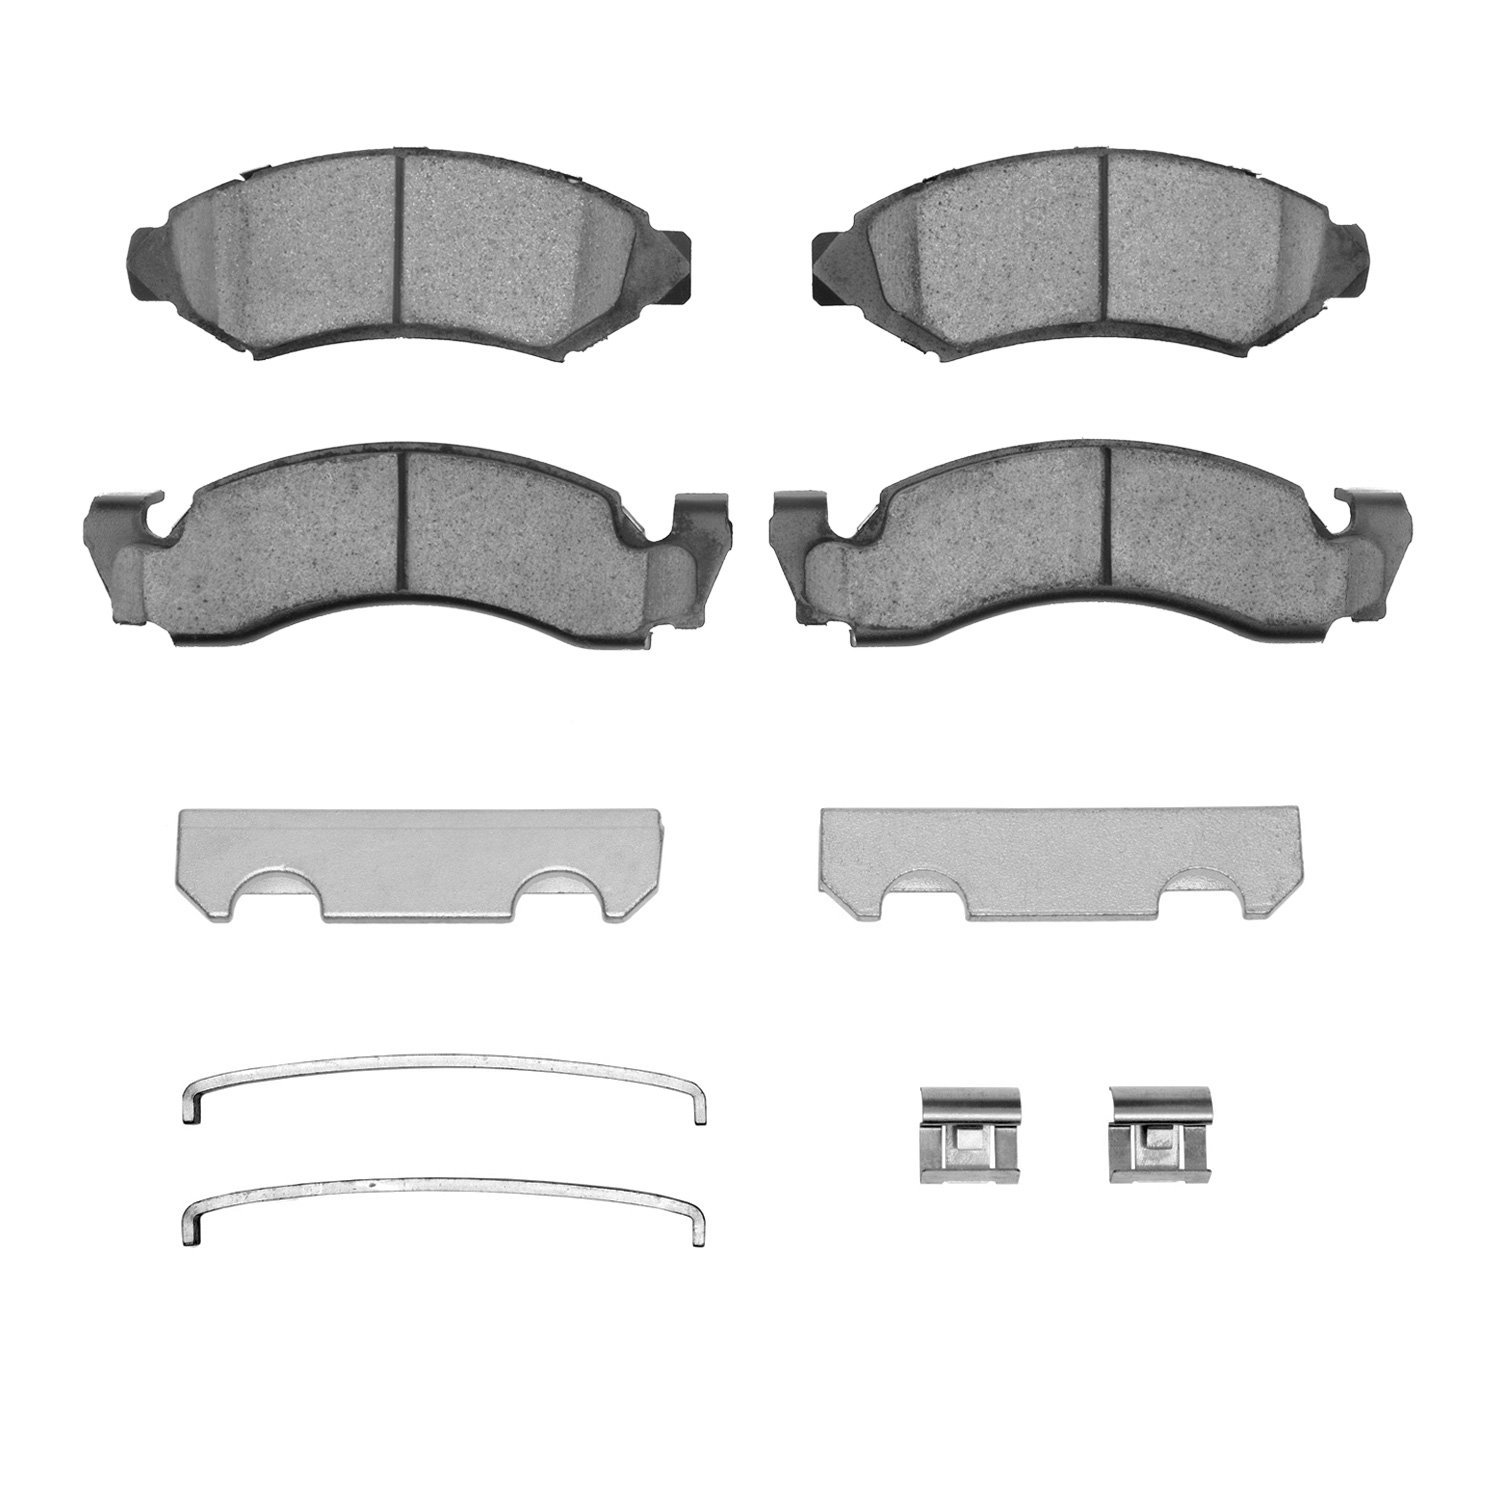 Ceramic Brake Pads & Hardware Kit, 1973-1985 Fits Multiple Makes/Models, Position: Front